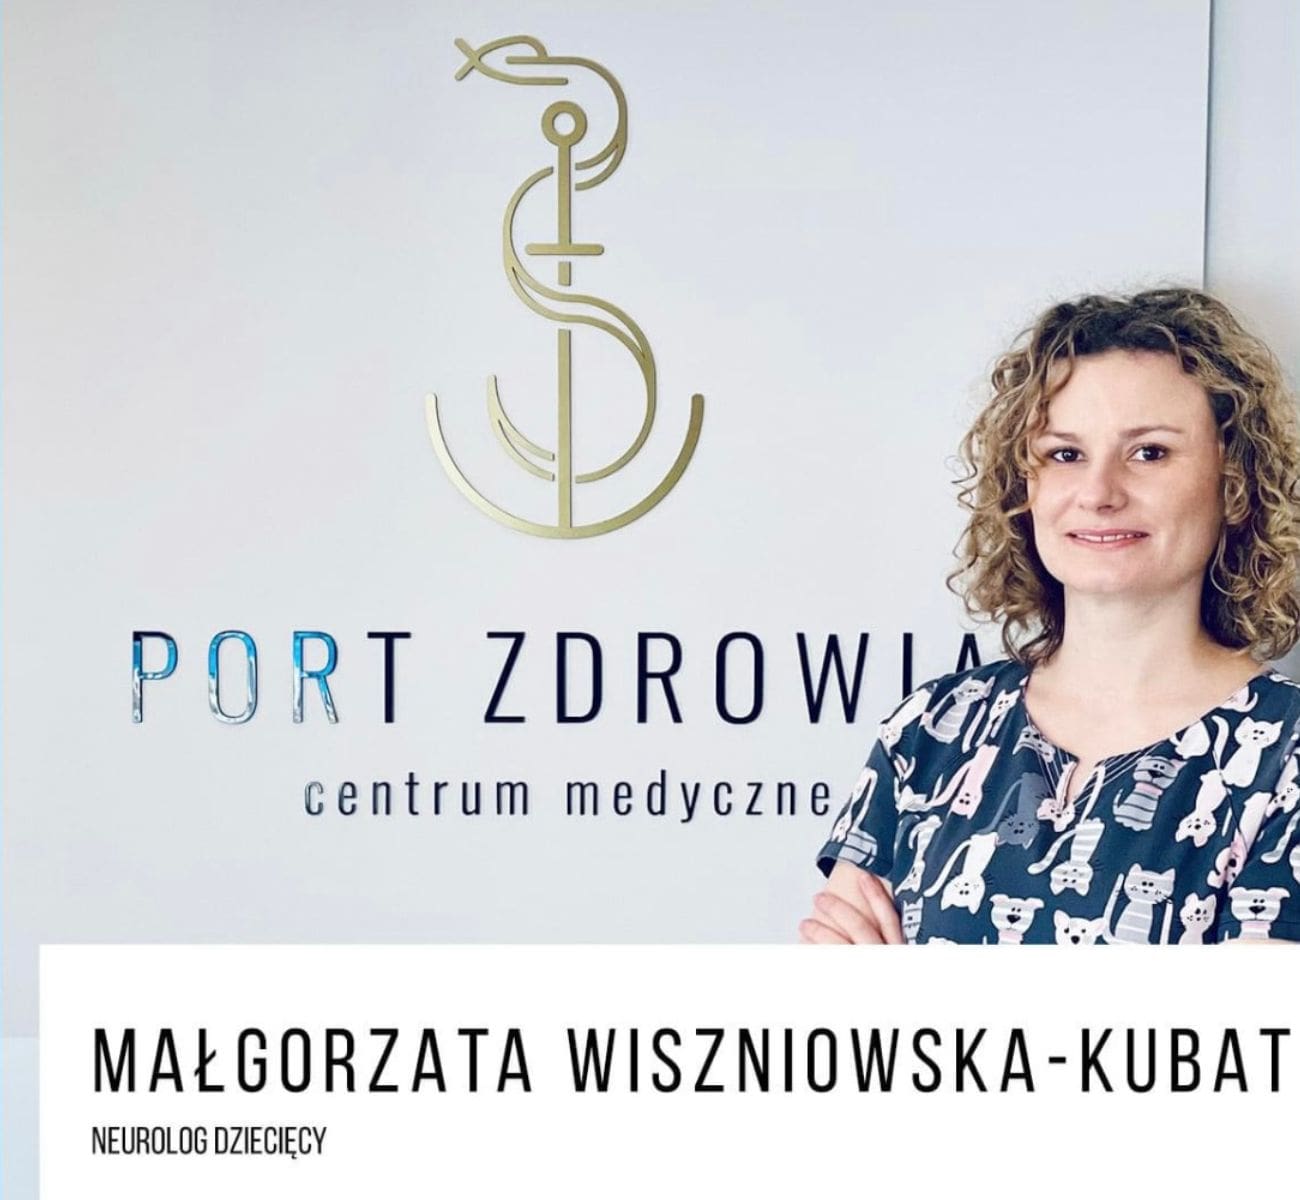 Neurolog dziecięcy Małgorzata Wiszniowska-Kubat